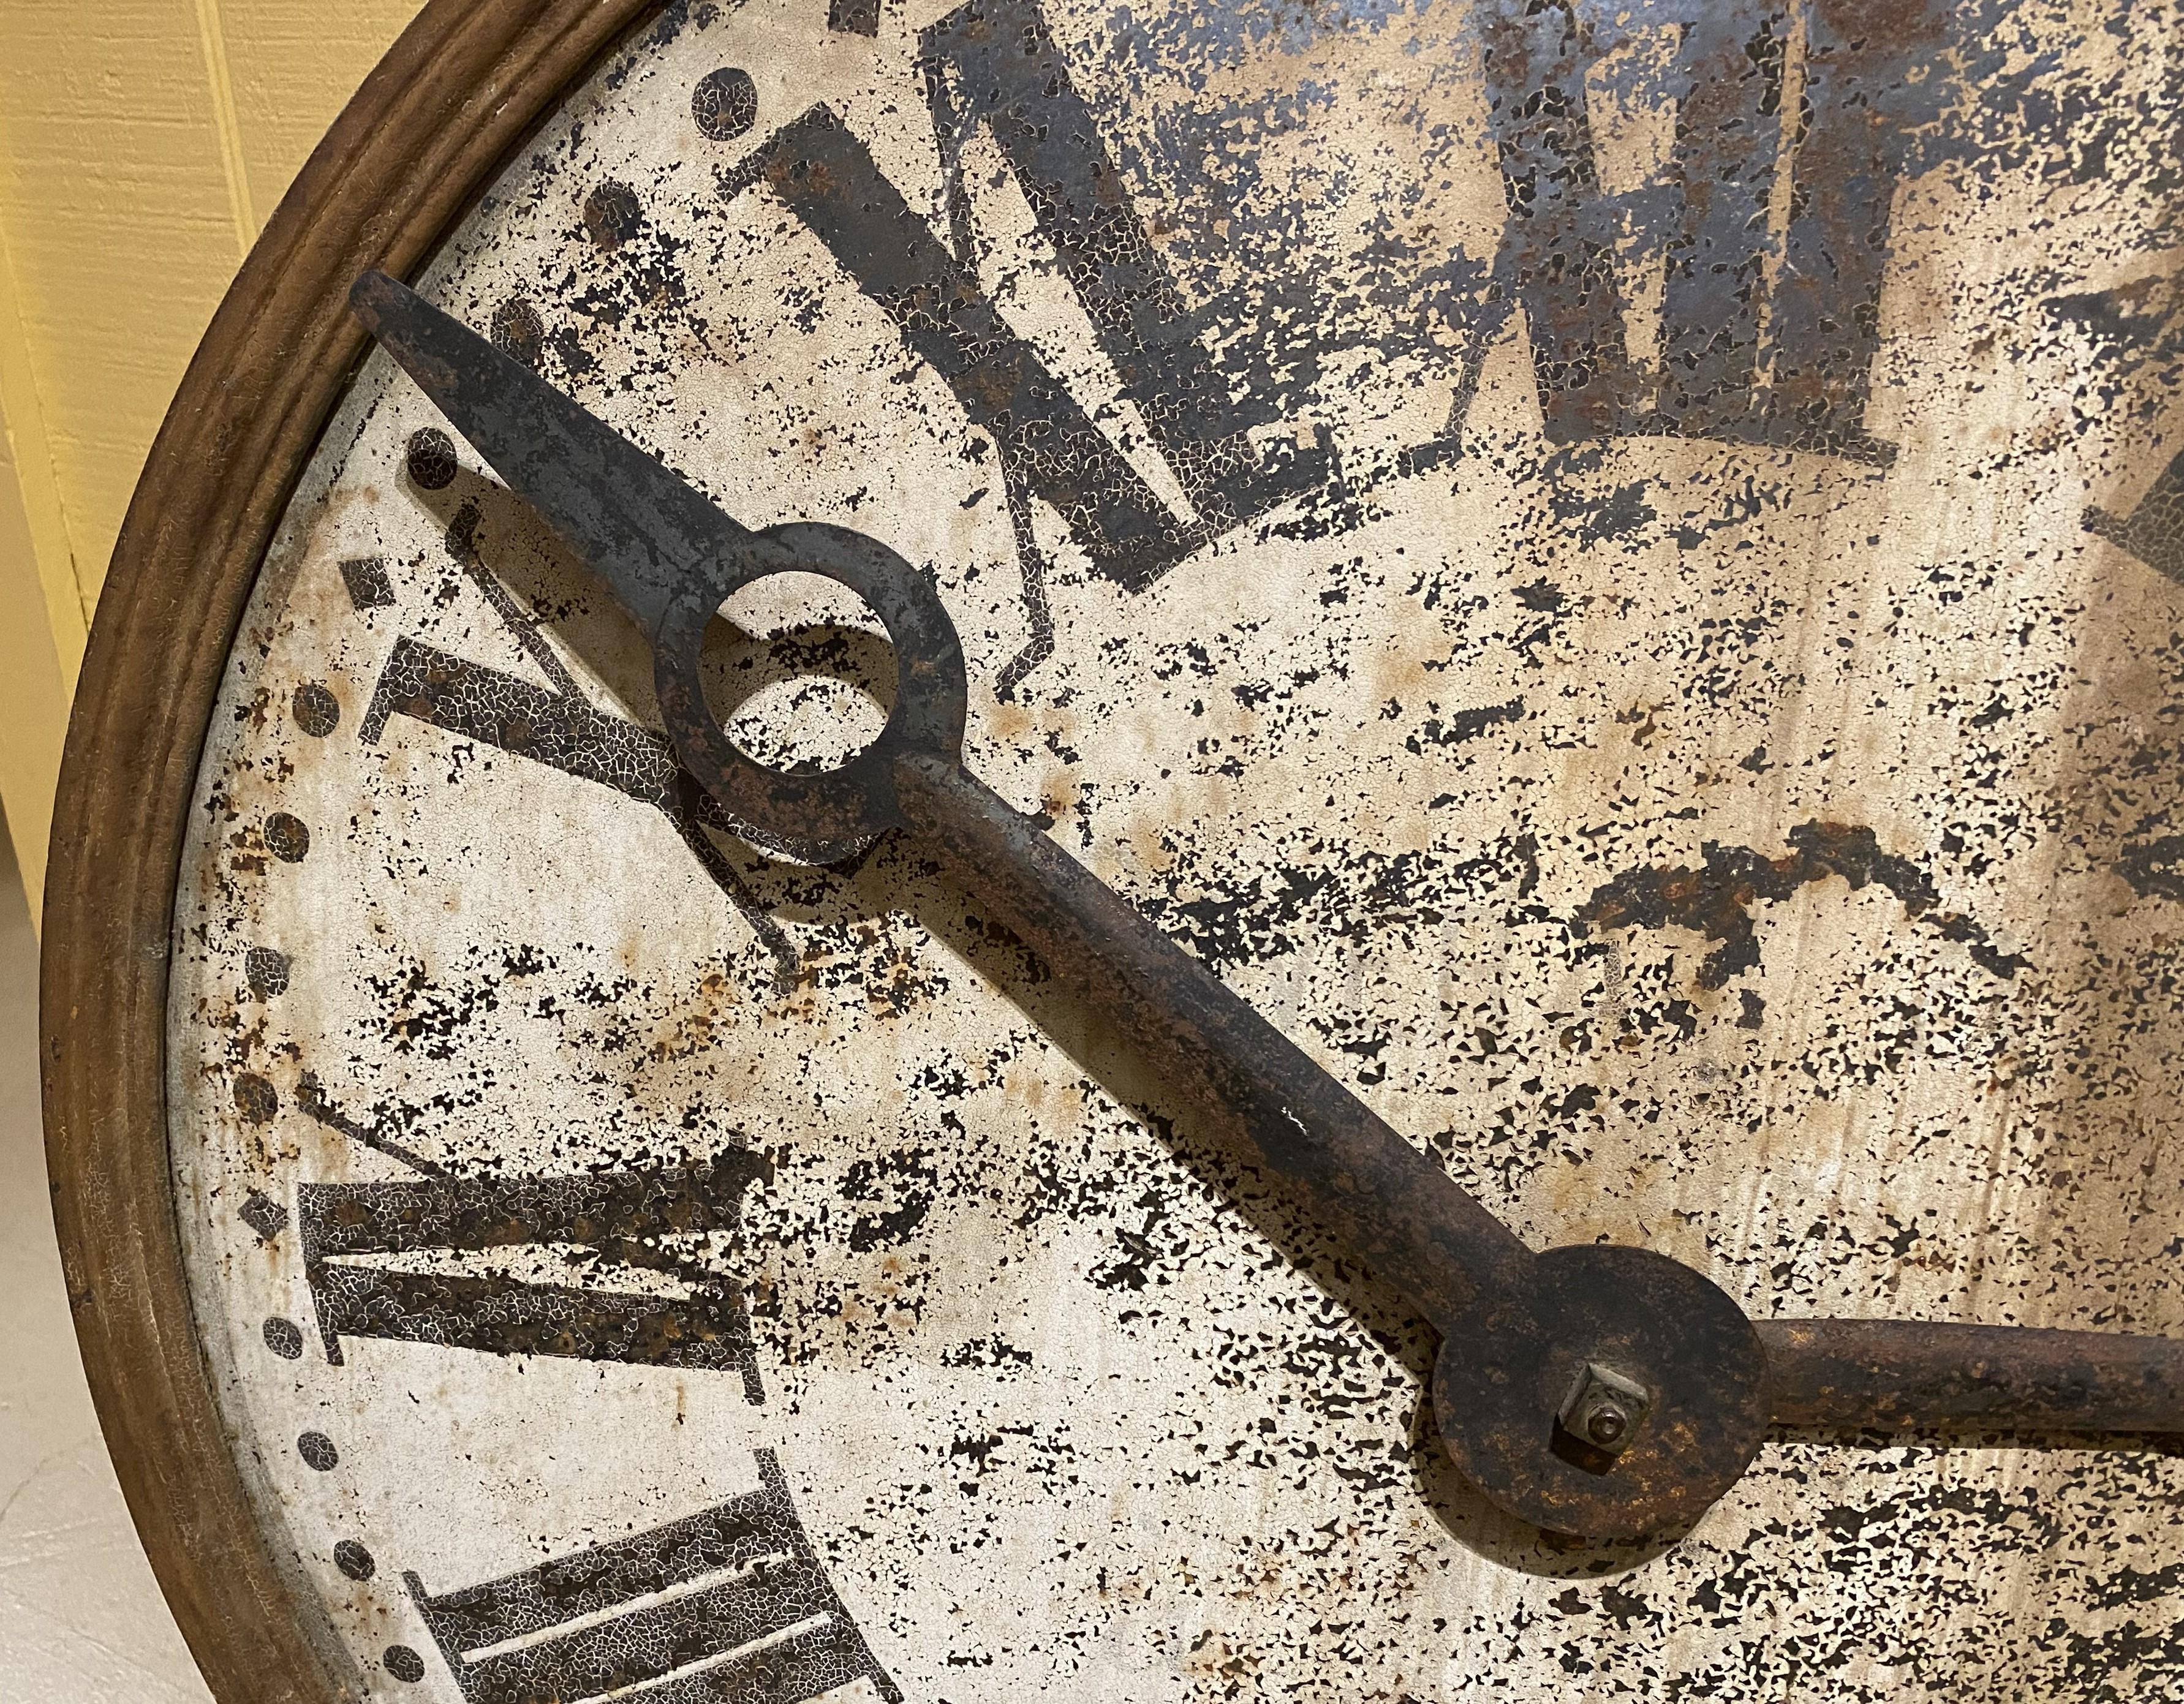 Magnifique exemple de cadran d'horloge en fer avec aiguilles, chiffres romains peints et mécanisme de mouvement, ainsi que le contrepoids d'origine. Probablement d'origine américaine, provenant d'une tour ou d'un fronton de bâtiment, datant du XIXe